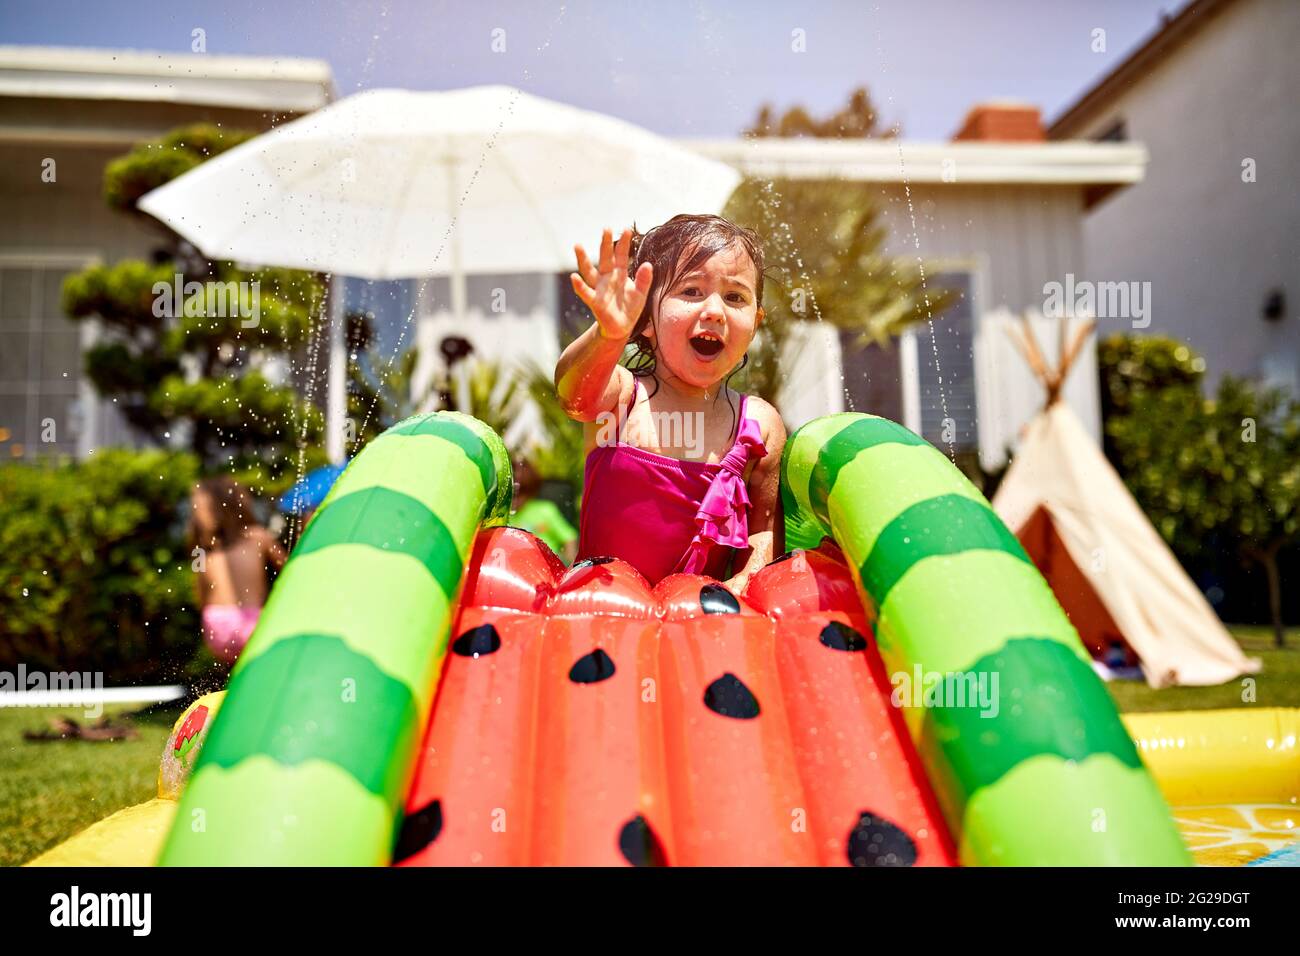 Mädchen spielt auf nassen aufblasbaren Rutsche im Hinterhof Stockfoto